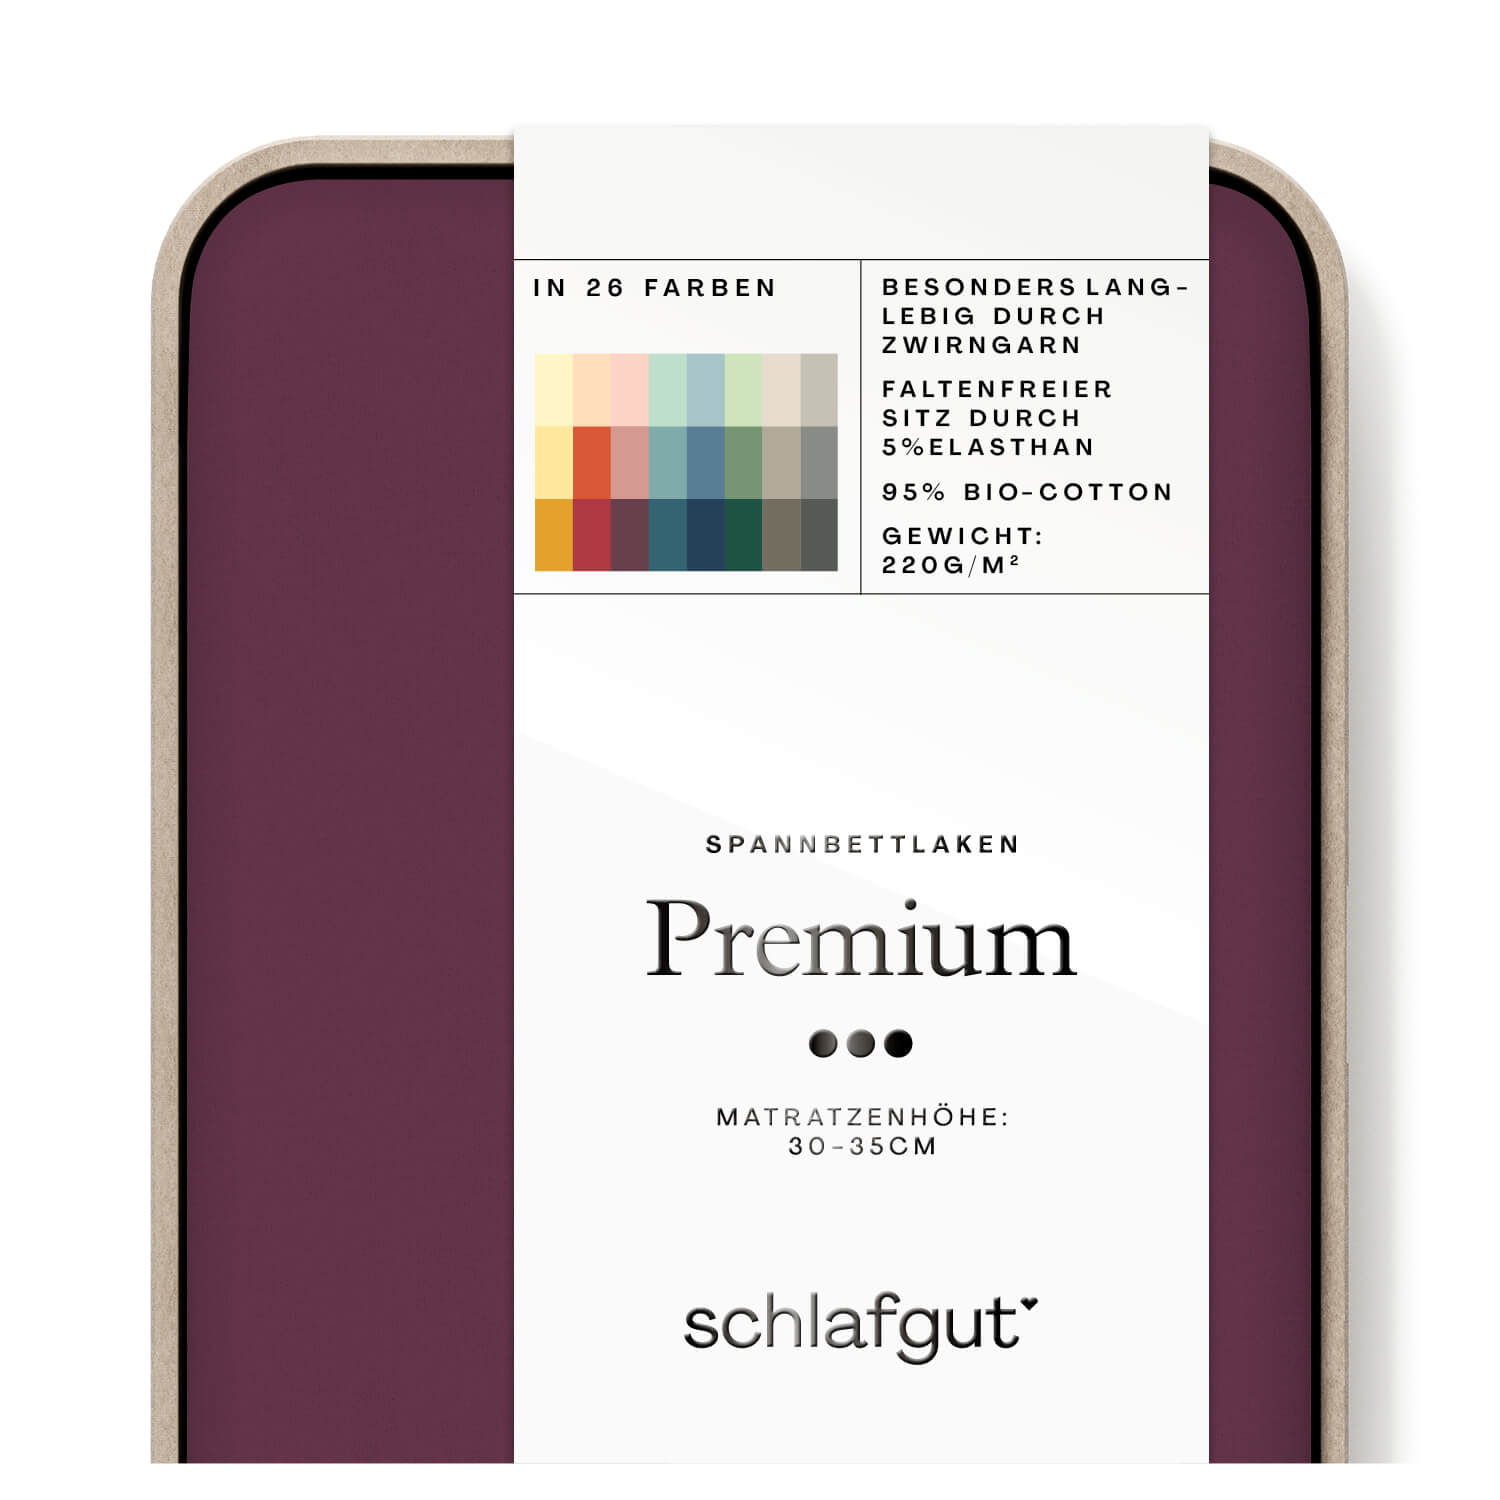 Das Produktbild vom Spannbettlaken der Reihe Premium in Farbe purple deep von Schlafgut